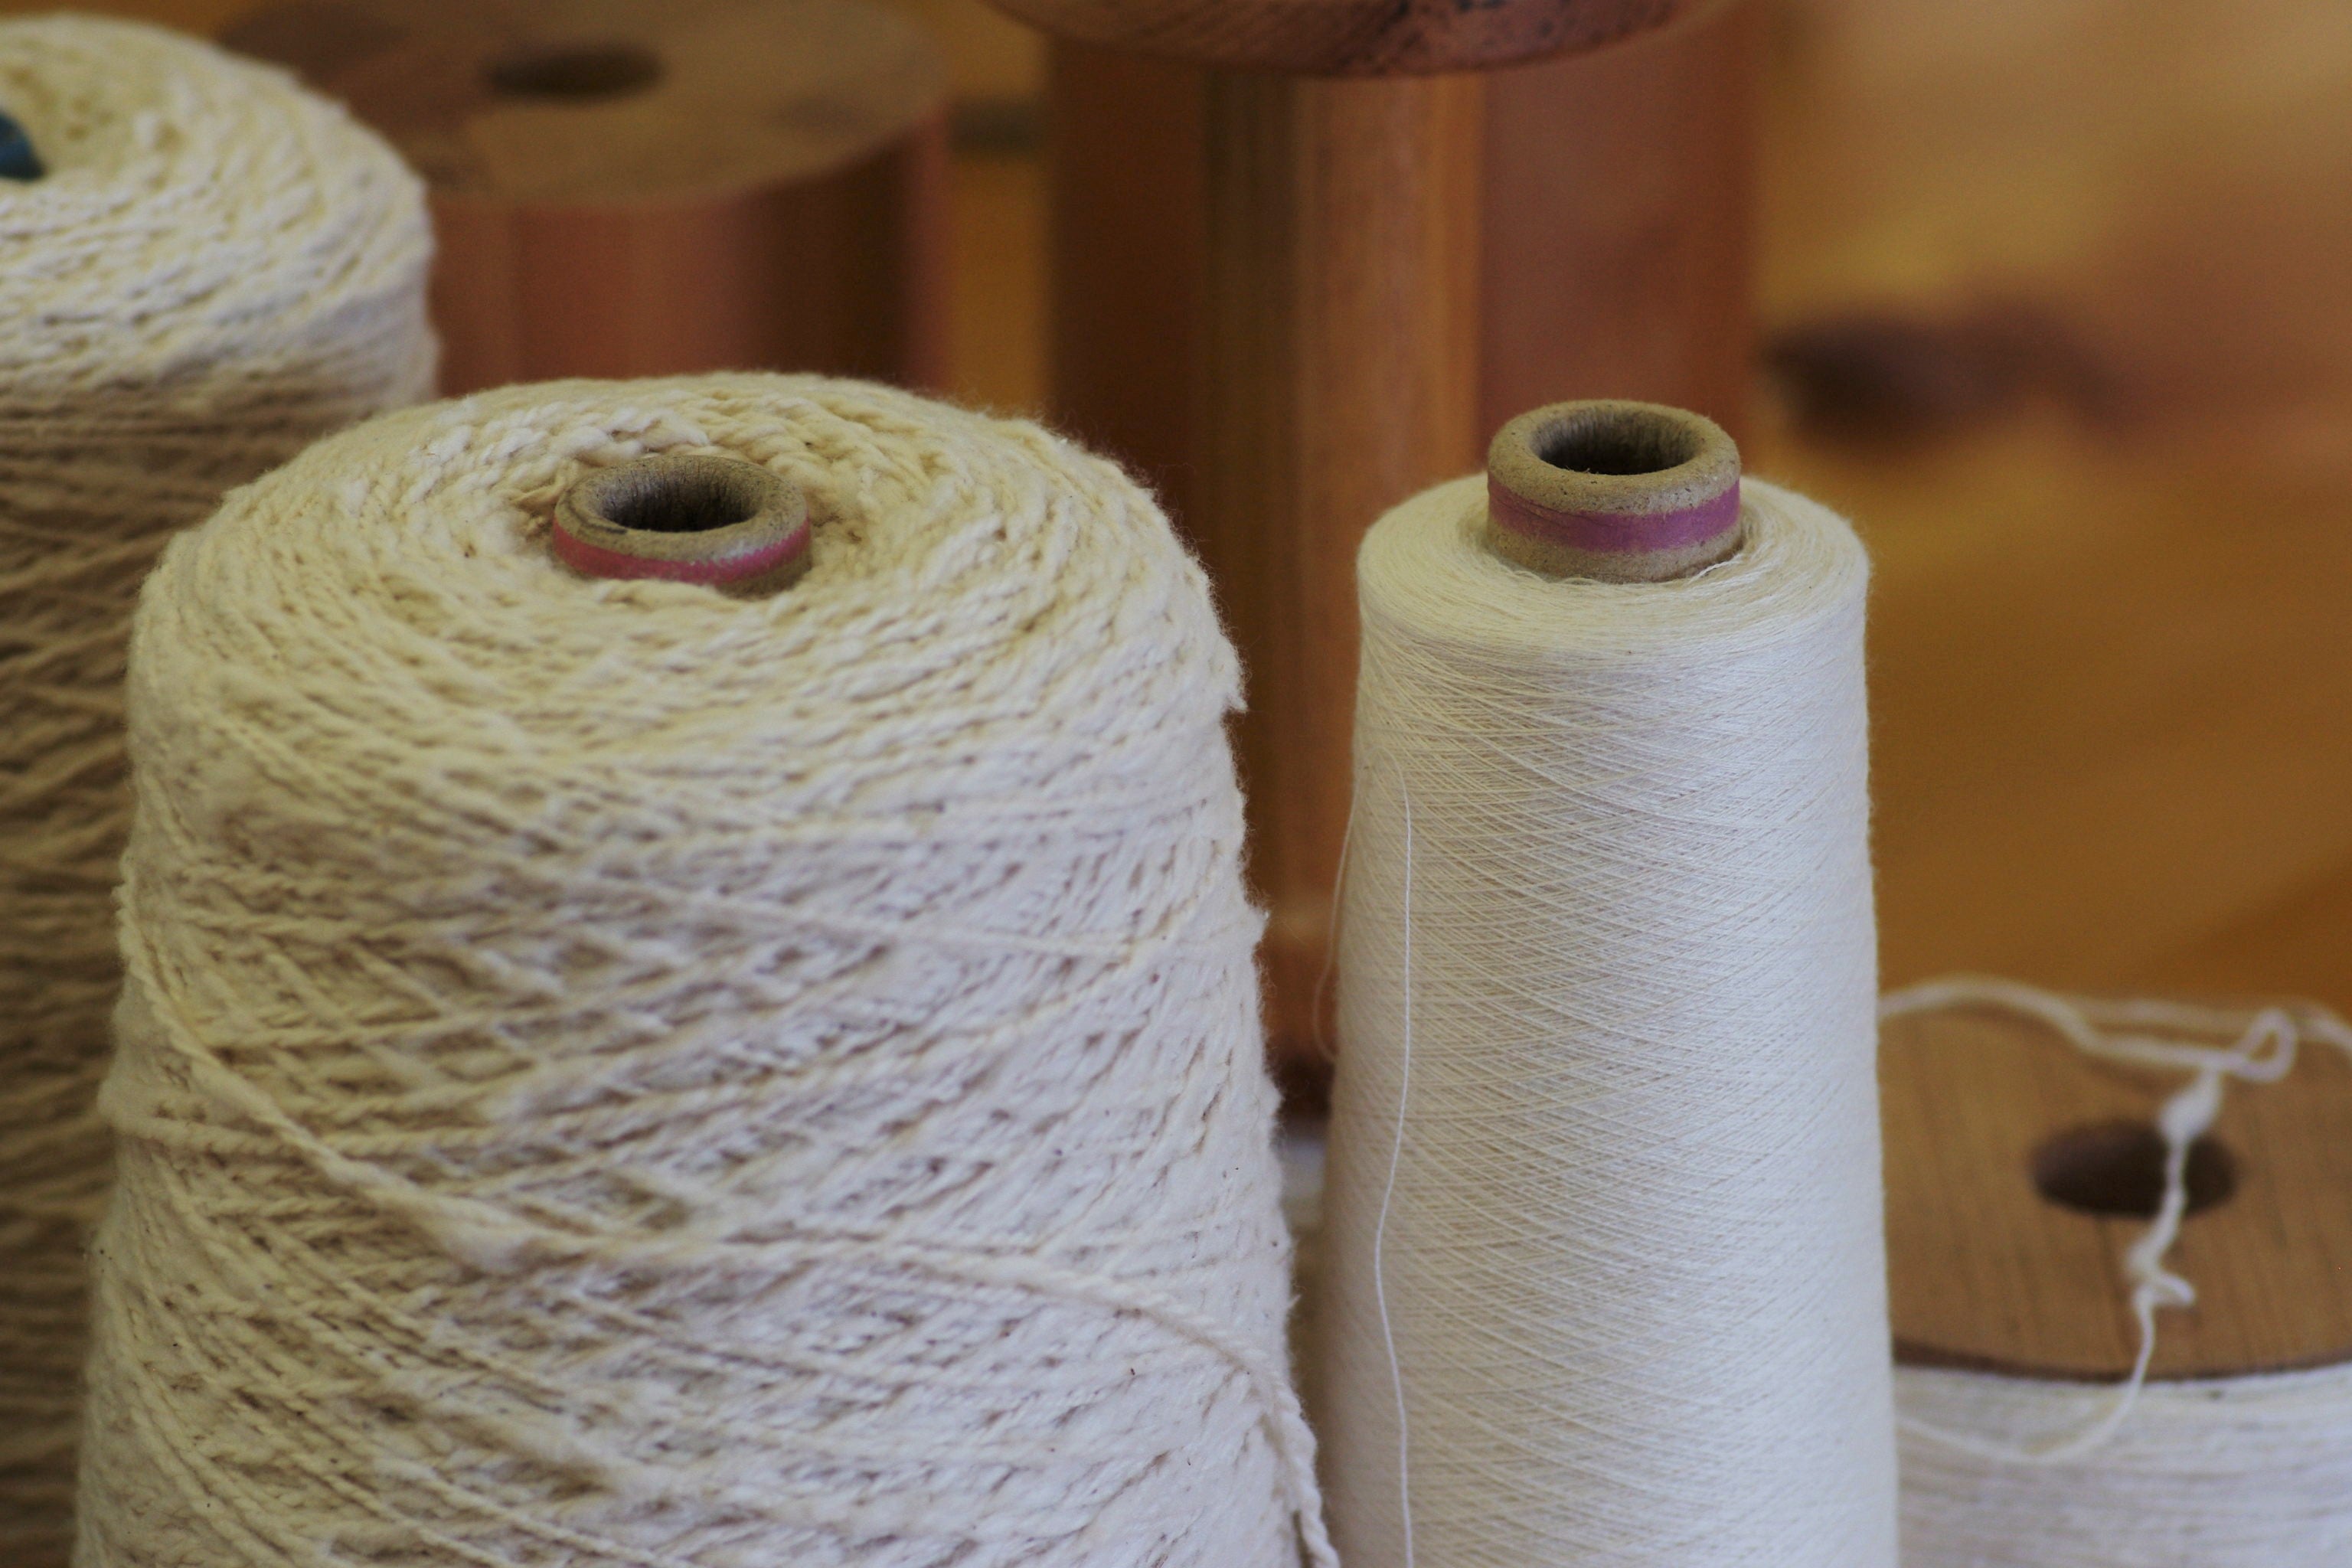 綿の生産において国内製造のガラ紡機やションヘル機織は繊維産業において欠かせない非常に希少な存在です。わたから わたからつむぐ マインド松井 日本の綿 わた 和綿 綿 和綿とは コットン コットンとは コットン１００％ オーガニックコットン 日用品 商品 無農薬 わめん 育て方 種類 糸紡ぎ 特徴  販売 豊か 暮らし 豊かな暮らし 生活 ガラ紡 コットン 生地 おすすめ 国産和綿 国産の綿 国産 生産地 自社畑 地場産業 岐阜 熊本 繊維 テキスタイル 織物 織り方 生地 布 ﾒｲﾄﾞｲﾝｼﾞｬﾊﾟﾝ 古い機械 国内製造 製造 JAPAN がら紡の仕組み 仕組み 撚り 撚りのかけ方 撚りの仕方 ションヘル織機 布帛 平織り 綾織り しゅす織り ワッフル ワッフル織り ワッフル生地 通気性 吸湿性 保温性 綿 わた コットン オーガニックコットン 綿１００％　コットン１００％　オーガニックコットン１００％